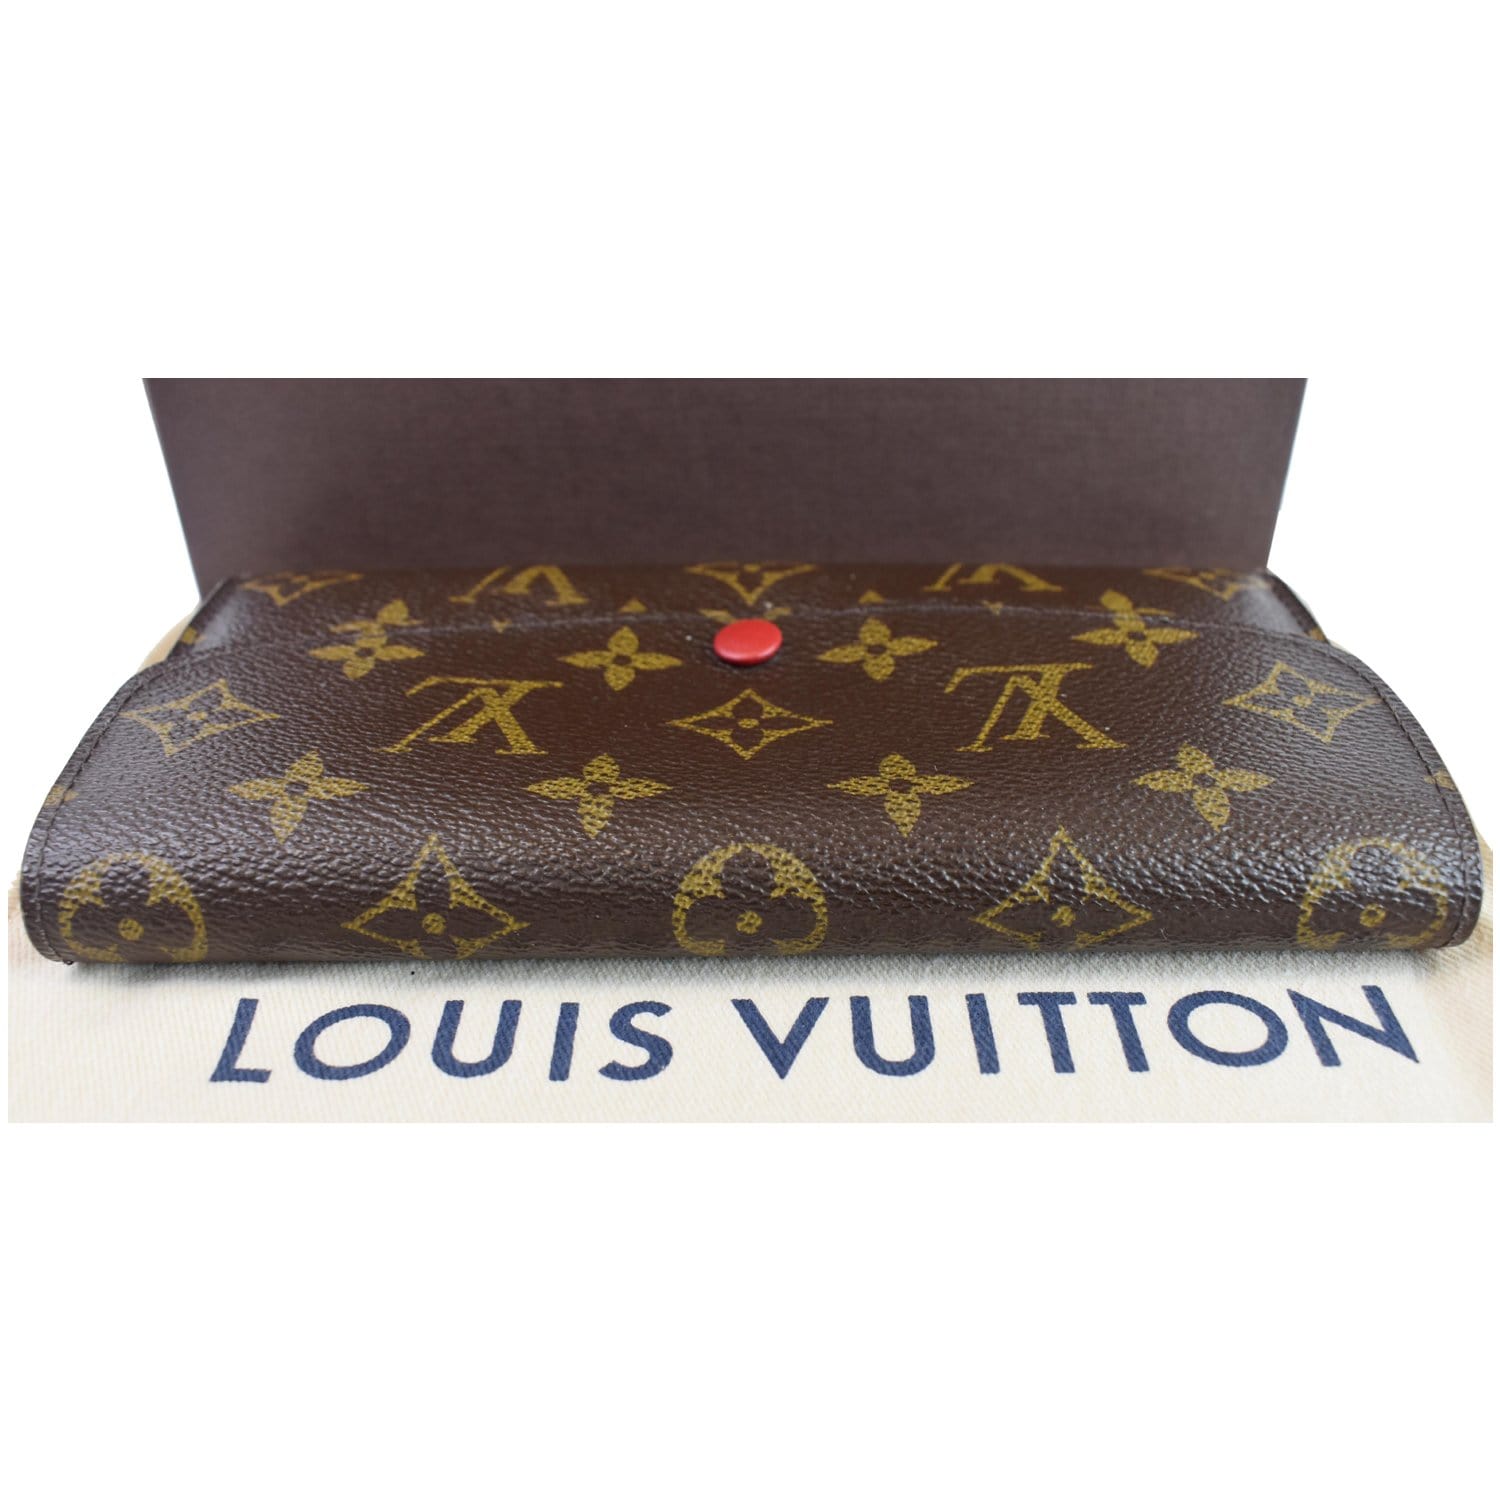 Louis Vuitton Emilie Monogram Canvas Wallet